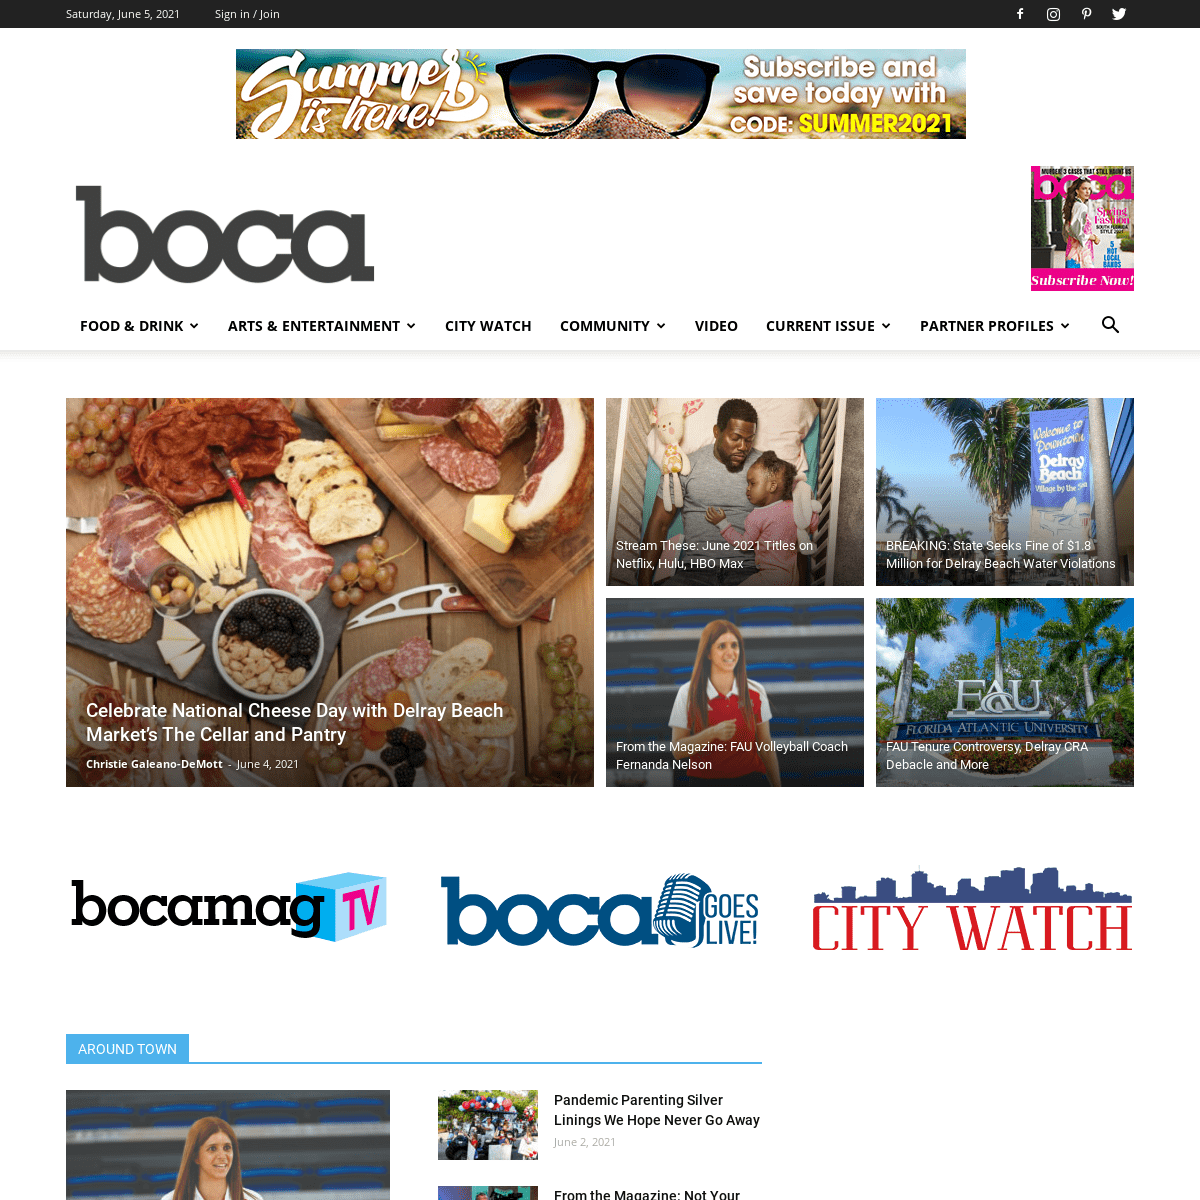 A complete backup of https://bocamag.com